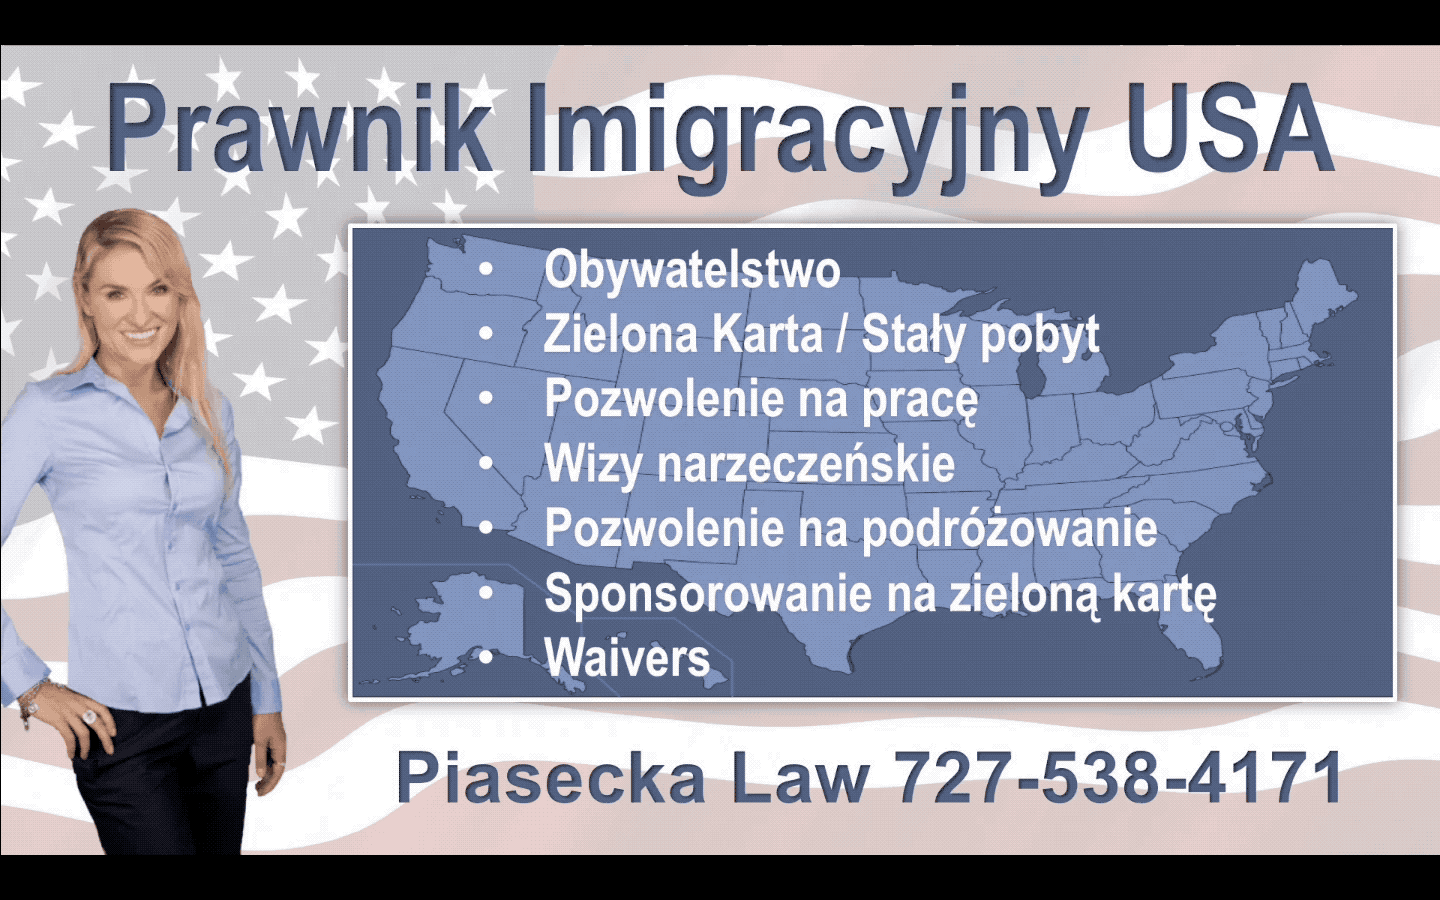 Prawnik-Imigracyjny-USA-Piasecka-Law-Flag-GIF